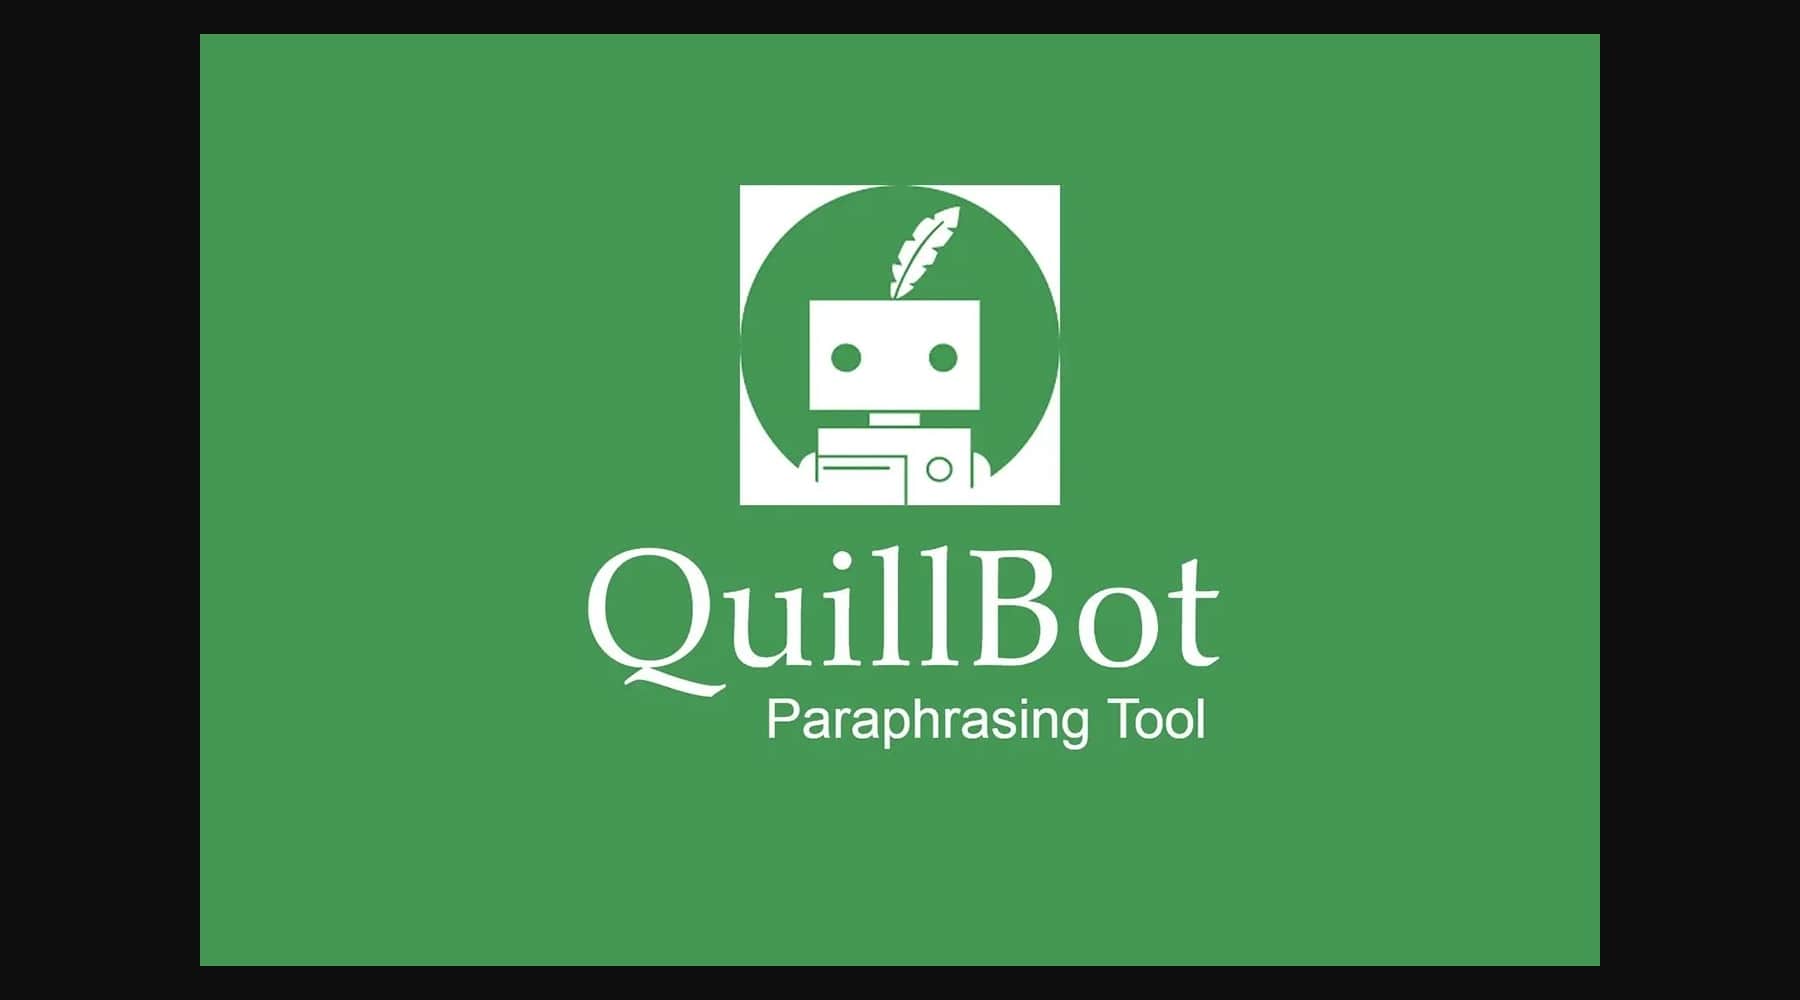 Quillbot 教育用 AI ツール